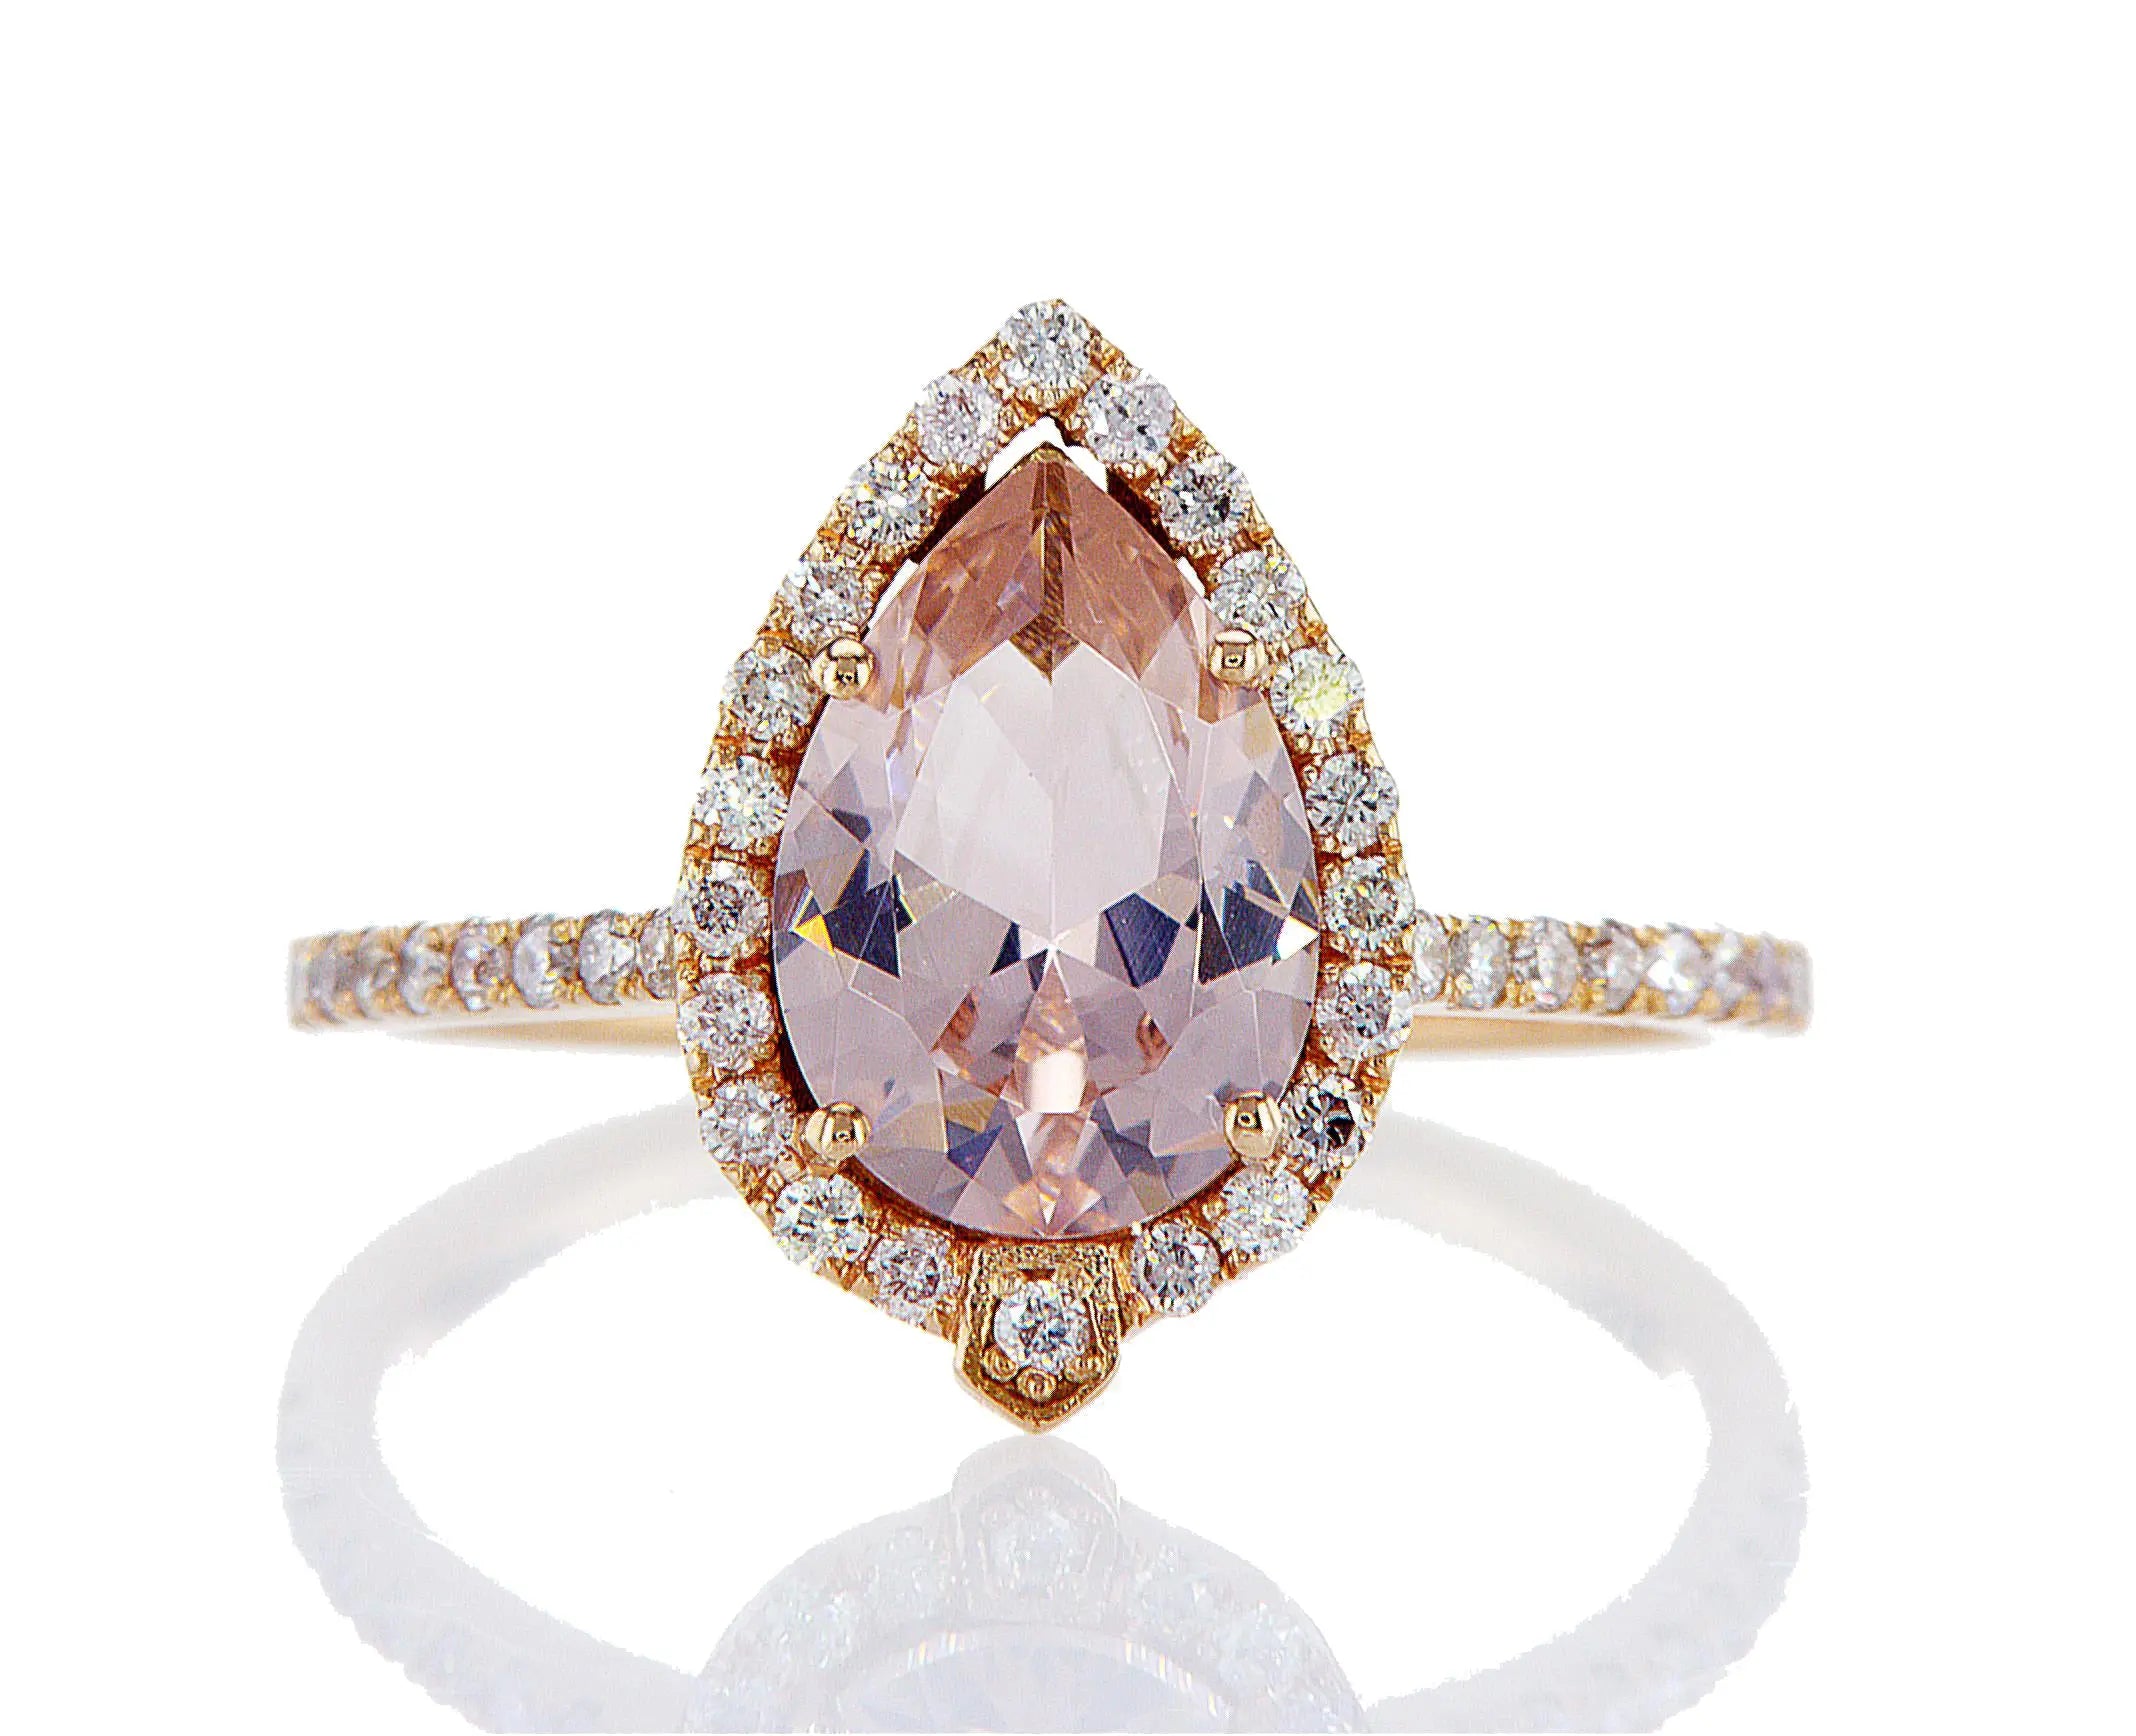 טבעת מעוצבת מאיה Fermond Jewelery